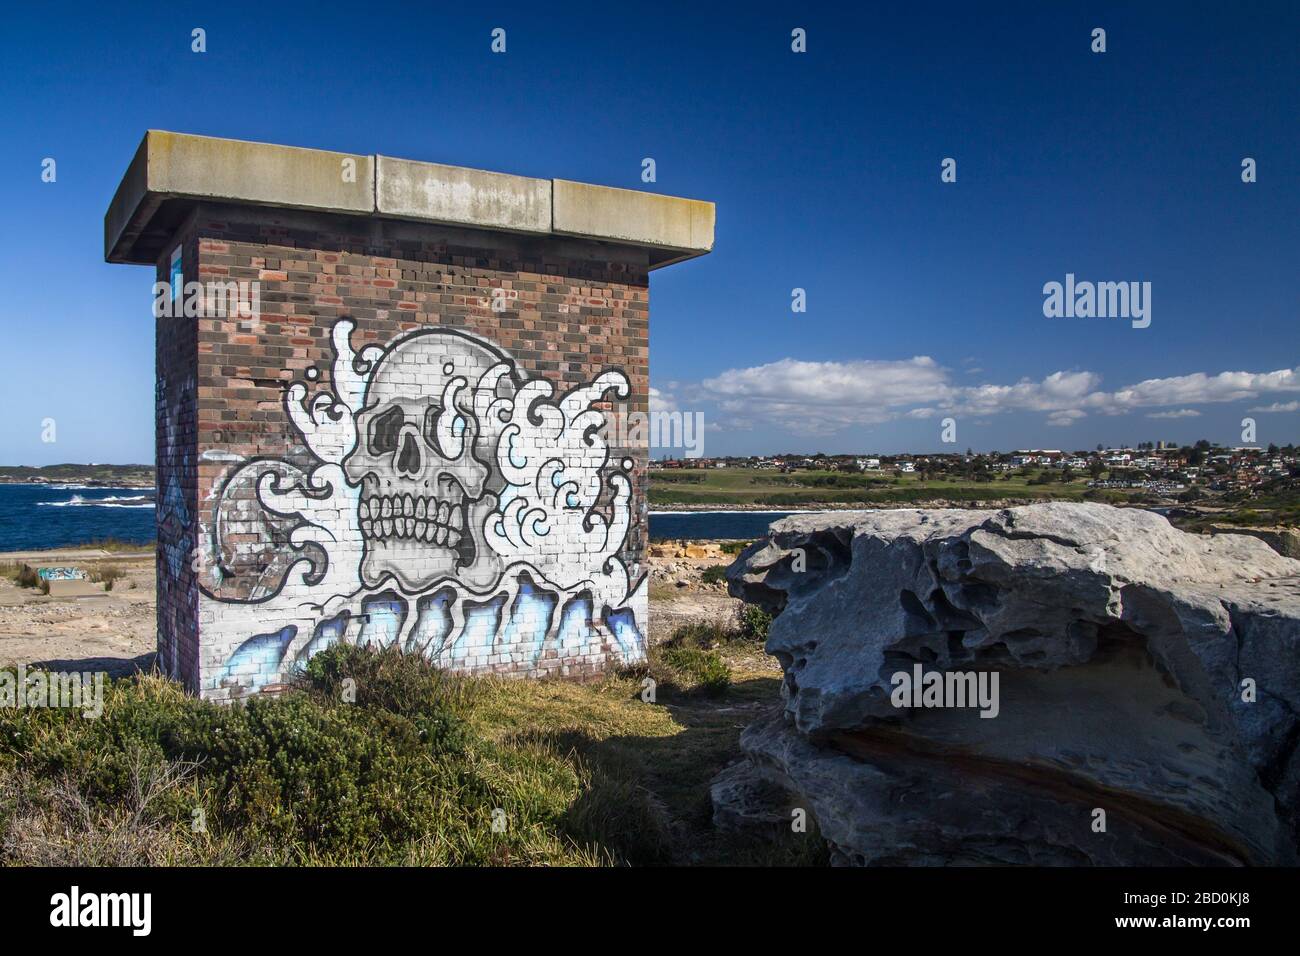 Skull graffiti along coastal walk near Sydney, Australia Stock Photo